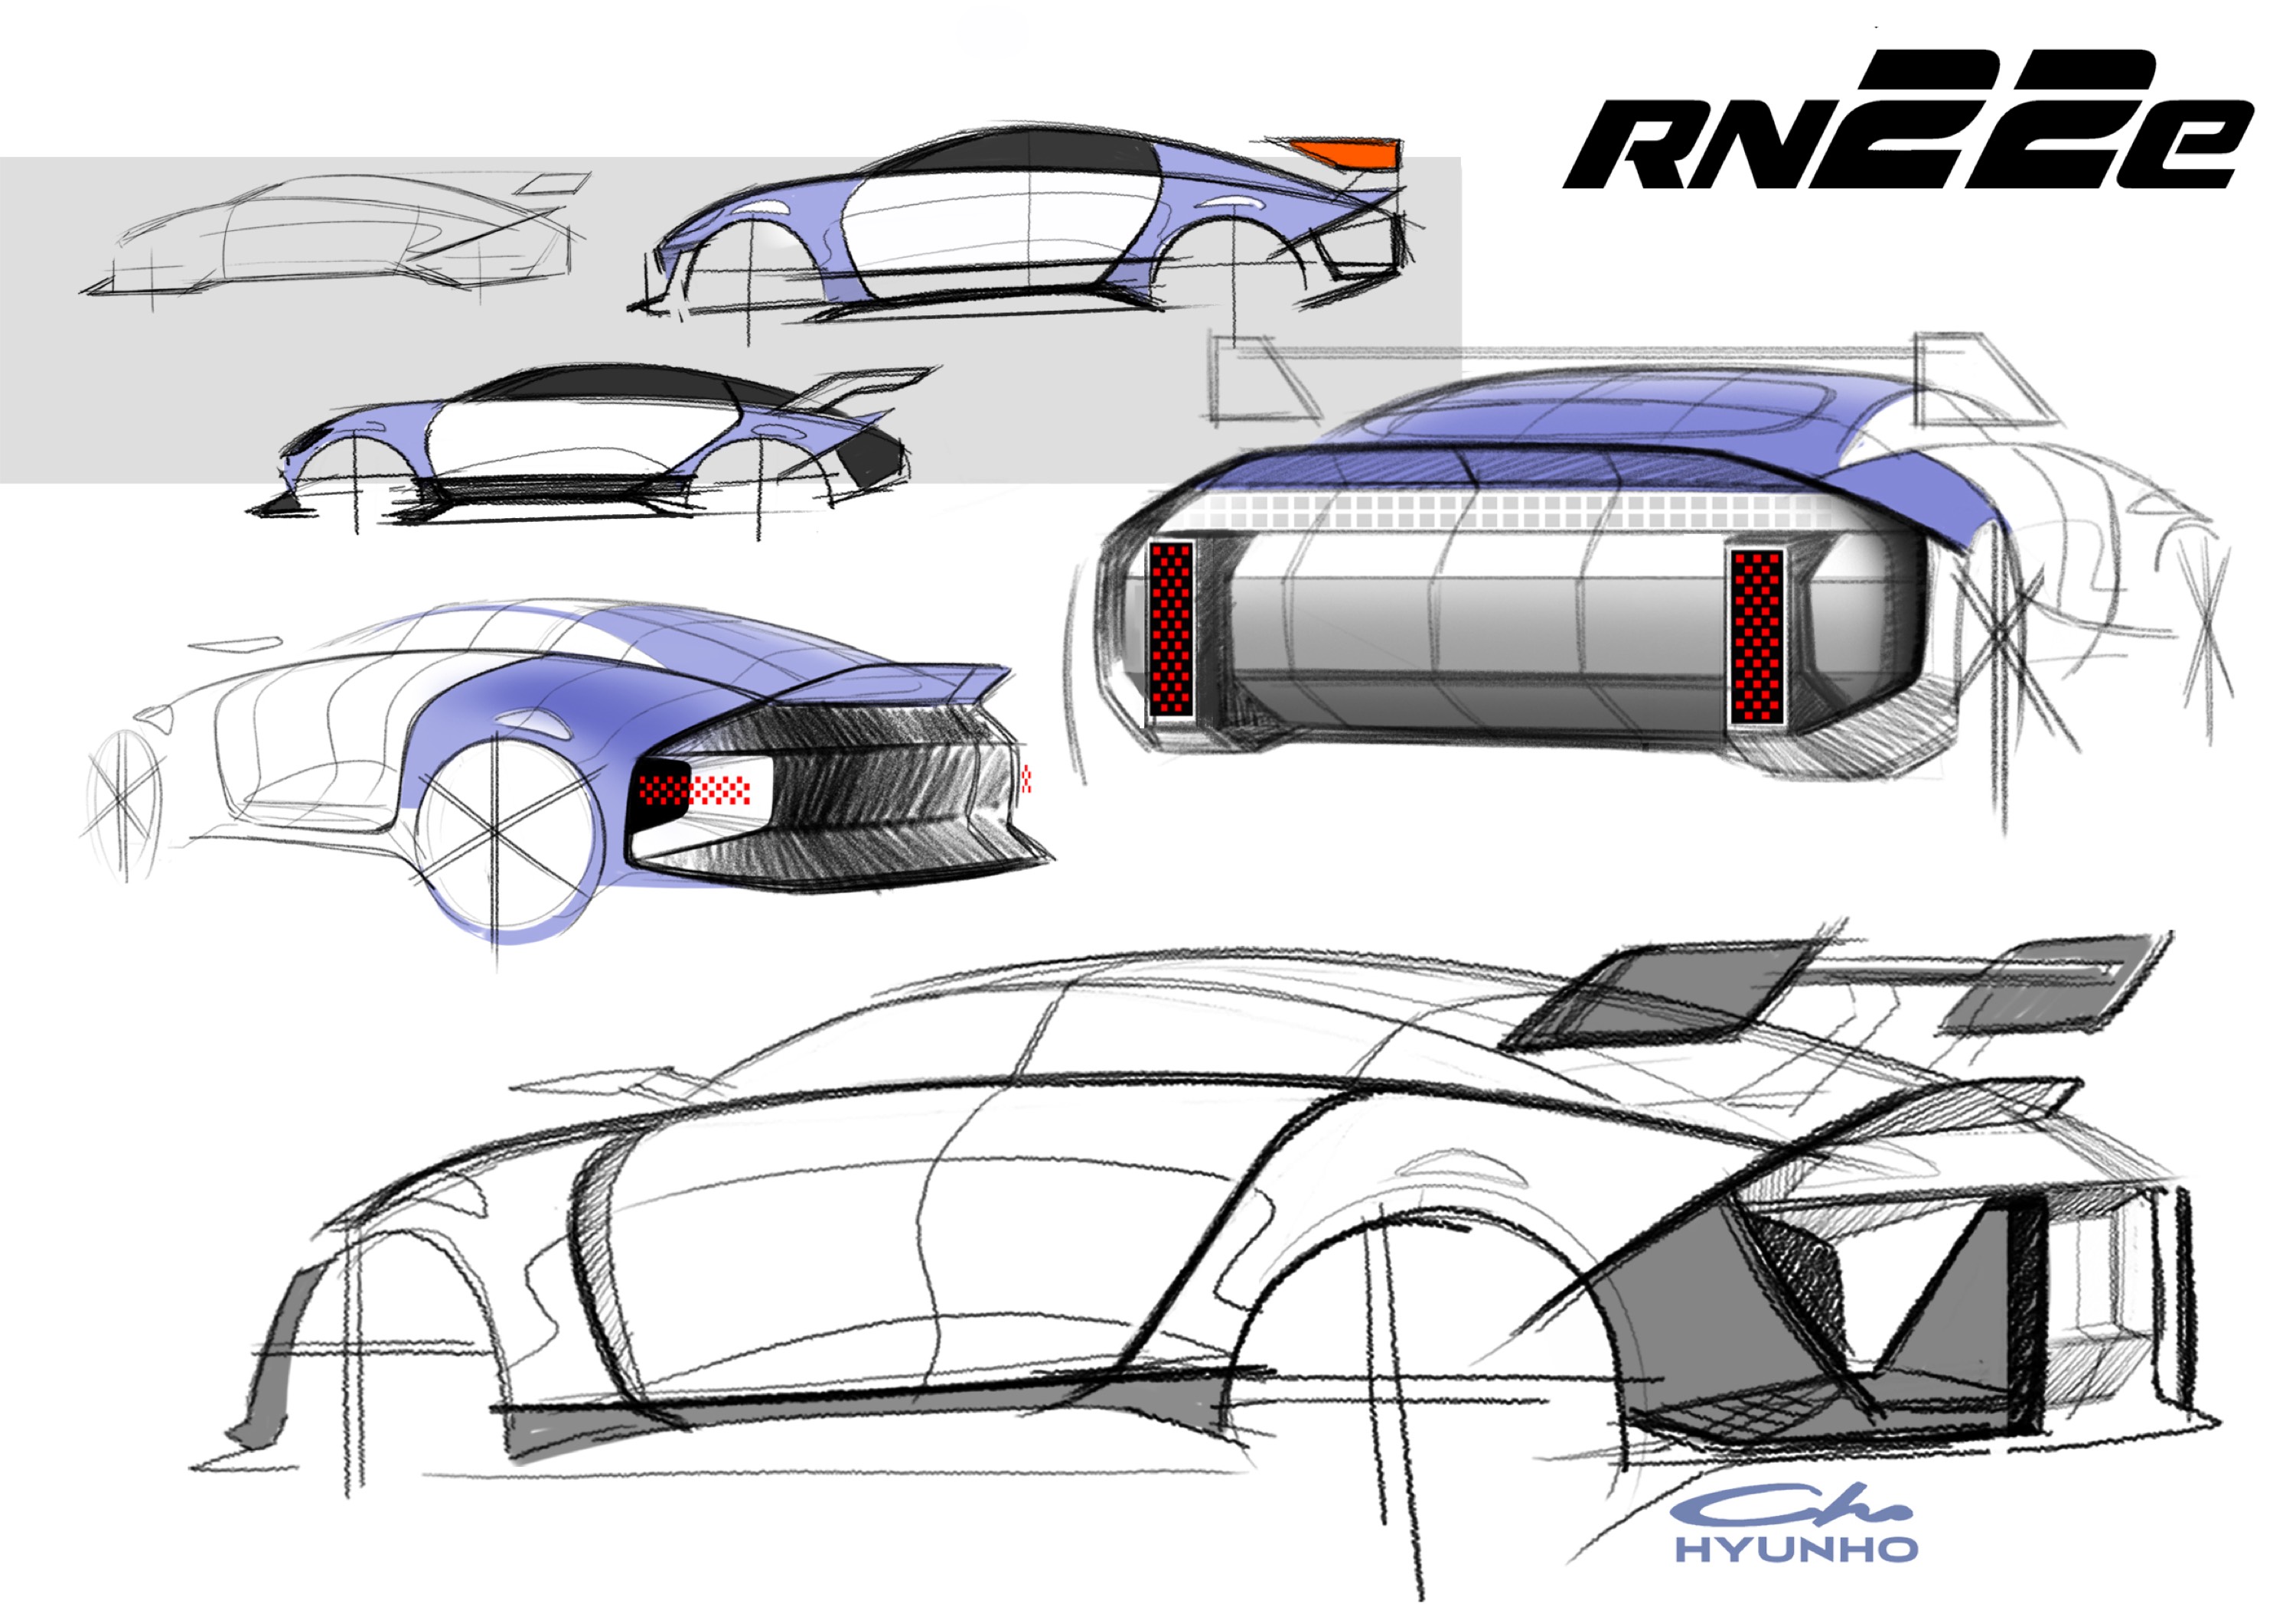 Hyundai RN22e Concept